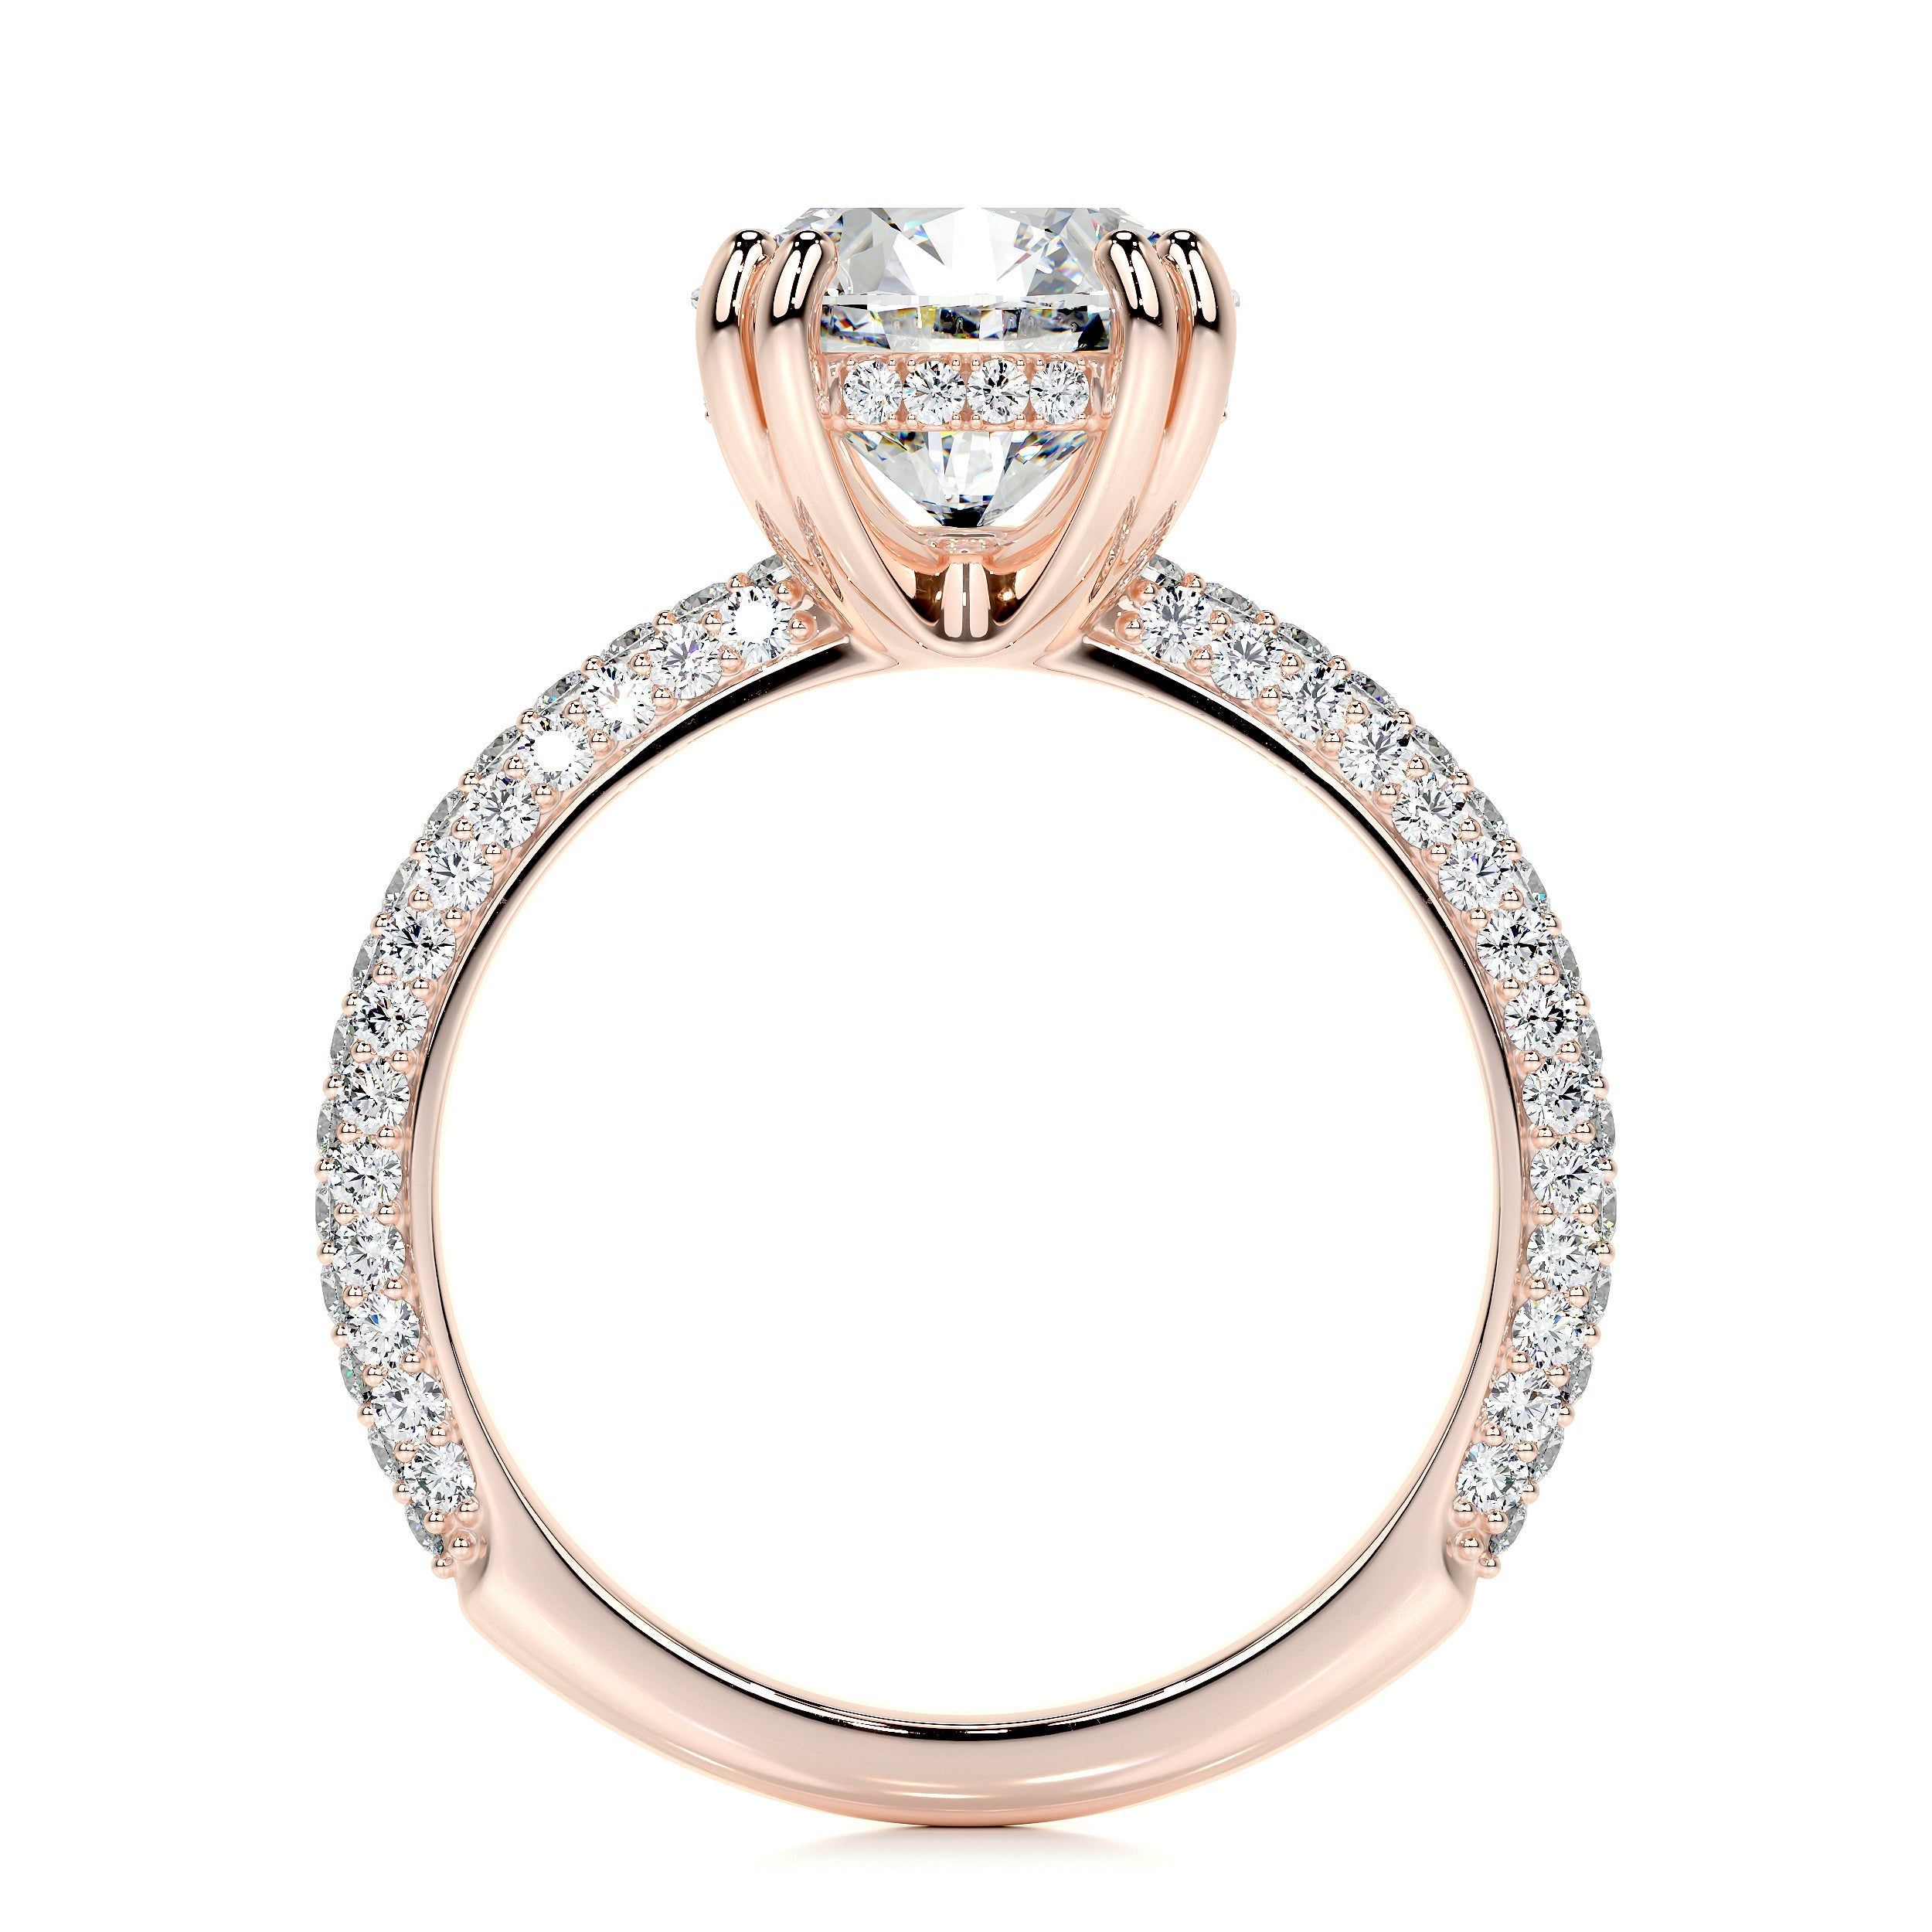 Lorena Lab Grown Diamond Ring   (3.5 Carat) -14K Rose Gold